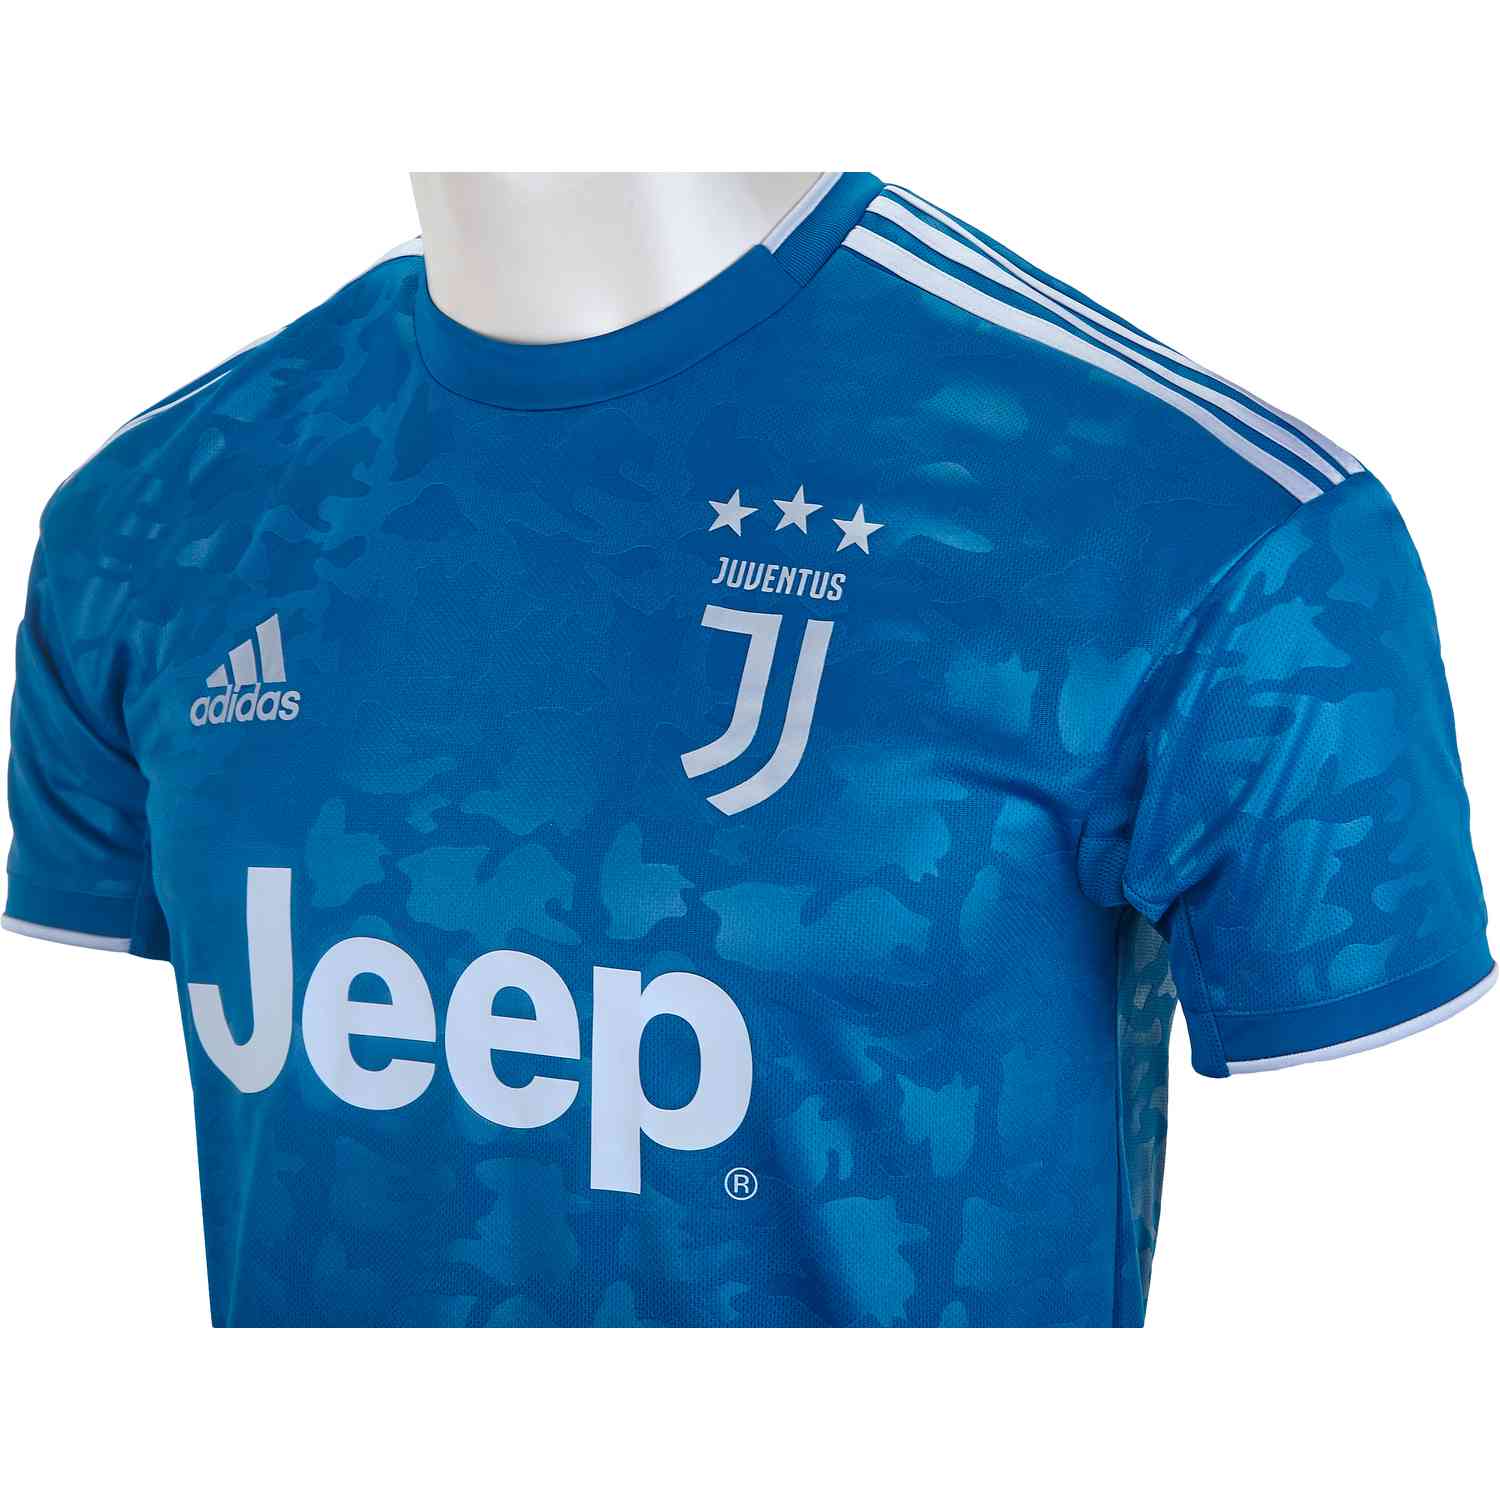 juventus blue jersey 2019